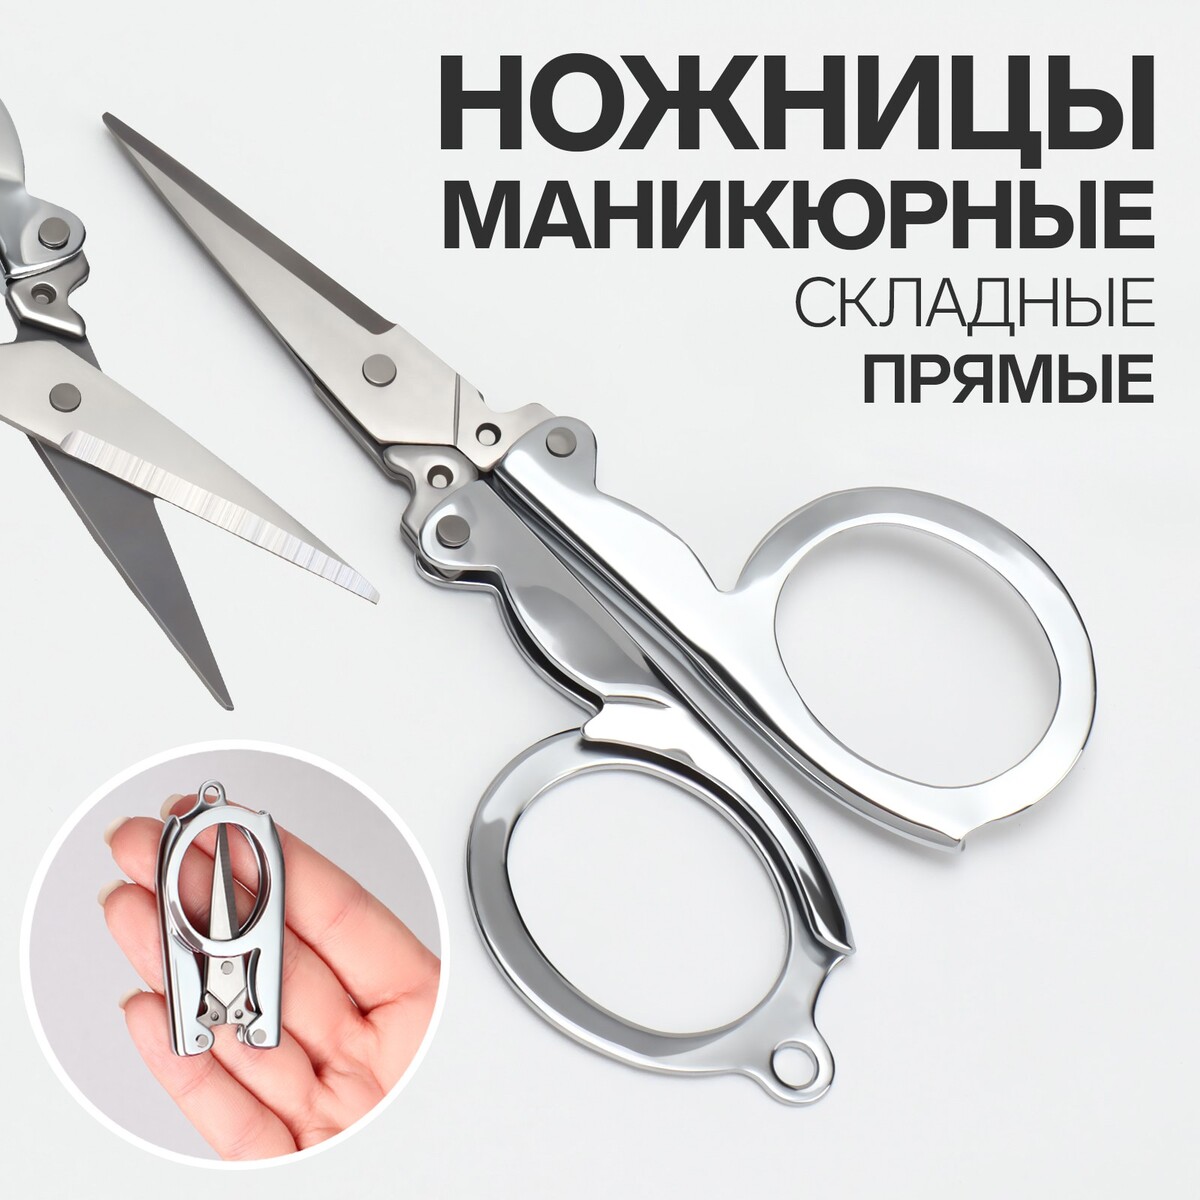 Ножницы маникюрные, складные, прямые, 10,5 см, цвет серебристый ножницы маникюрные прямые складные 9 см серебристый